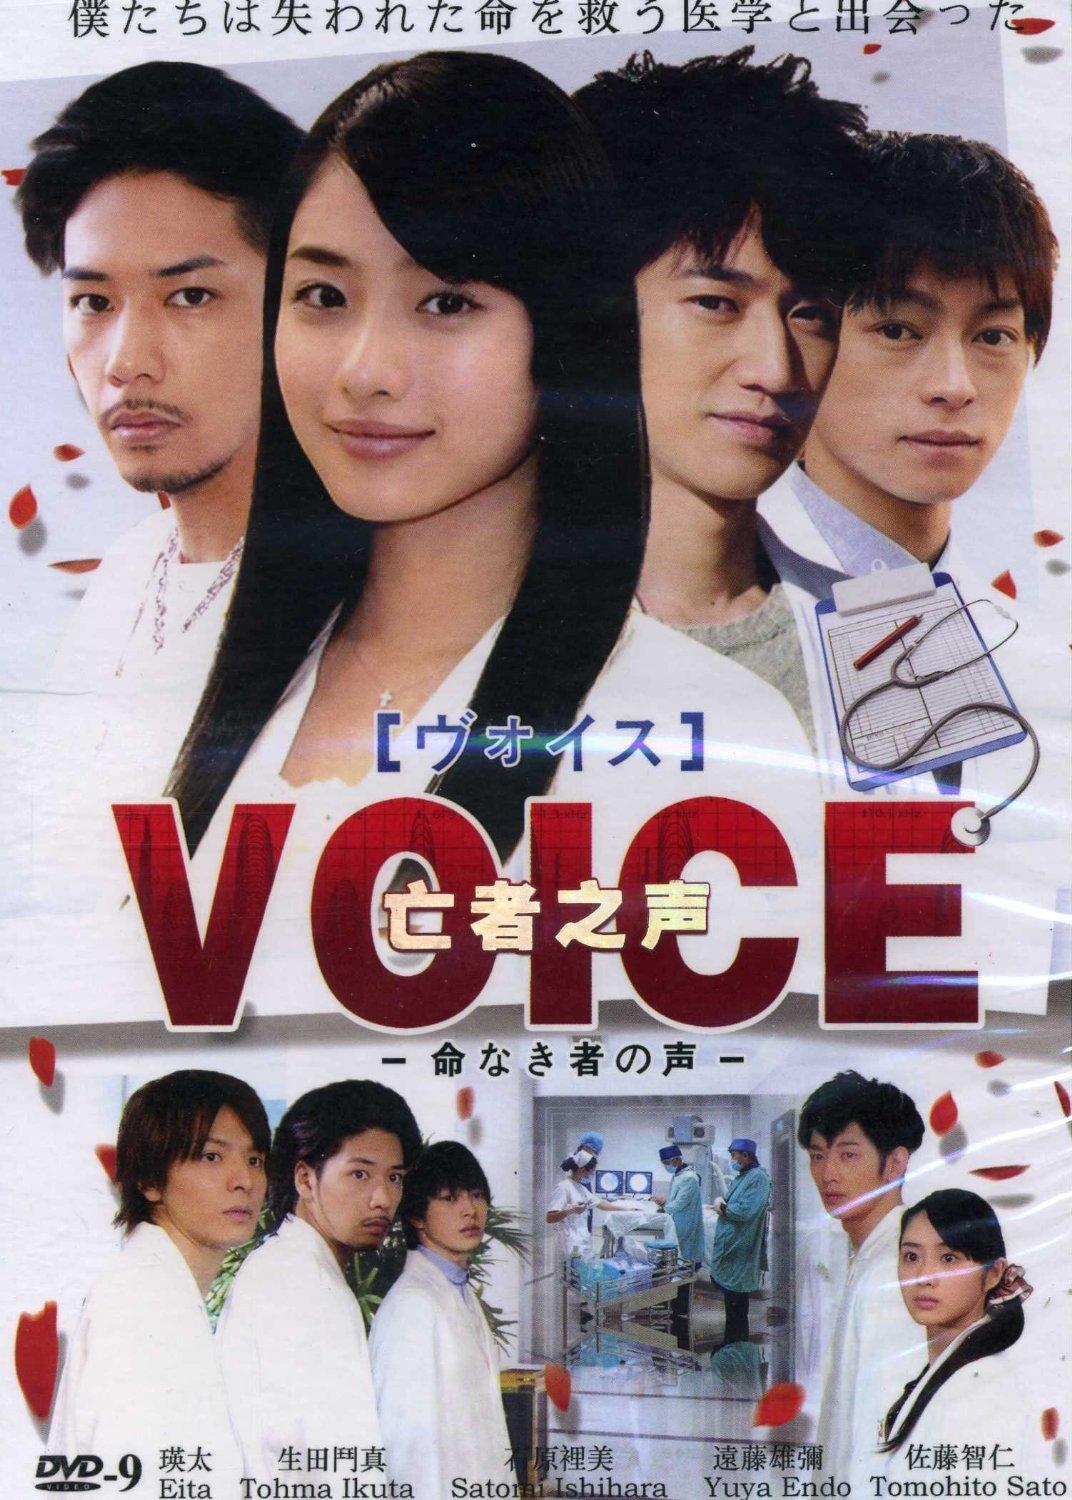 مسلسل ياباني Voice |الصوت